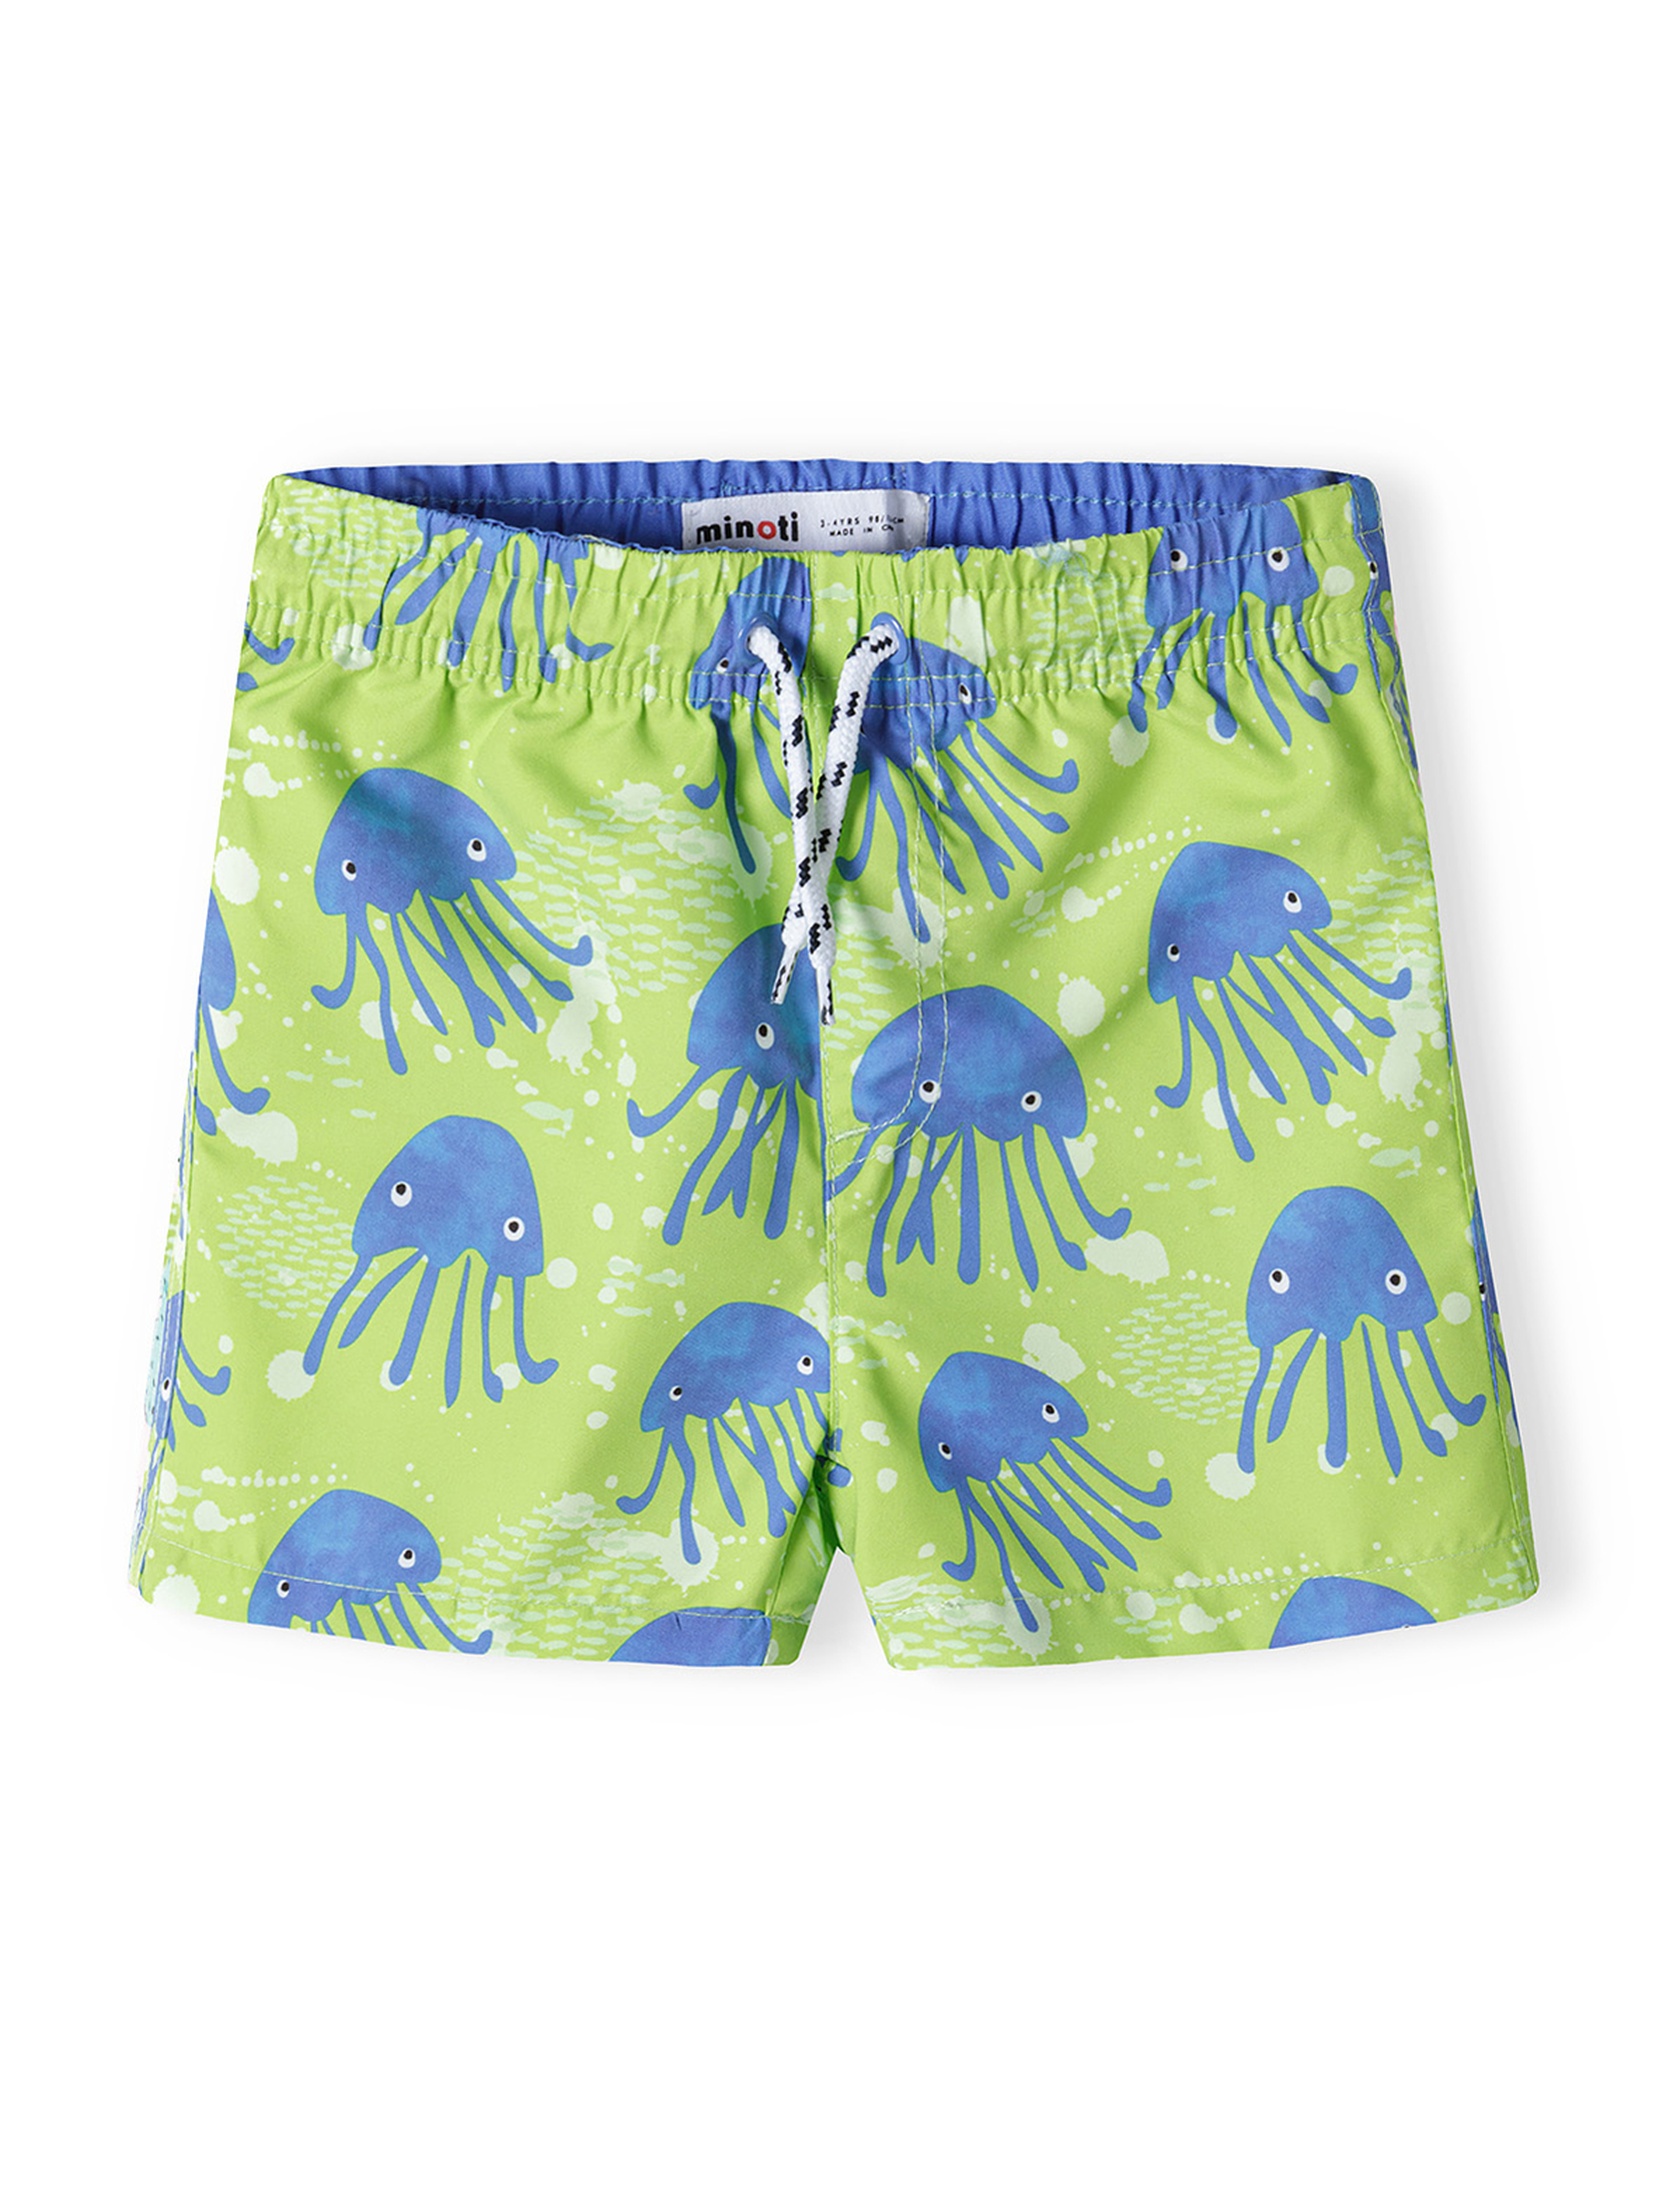 Zielone szorty kąpielowe dla chłopca w meduzy